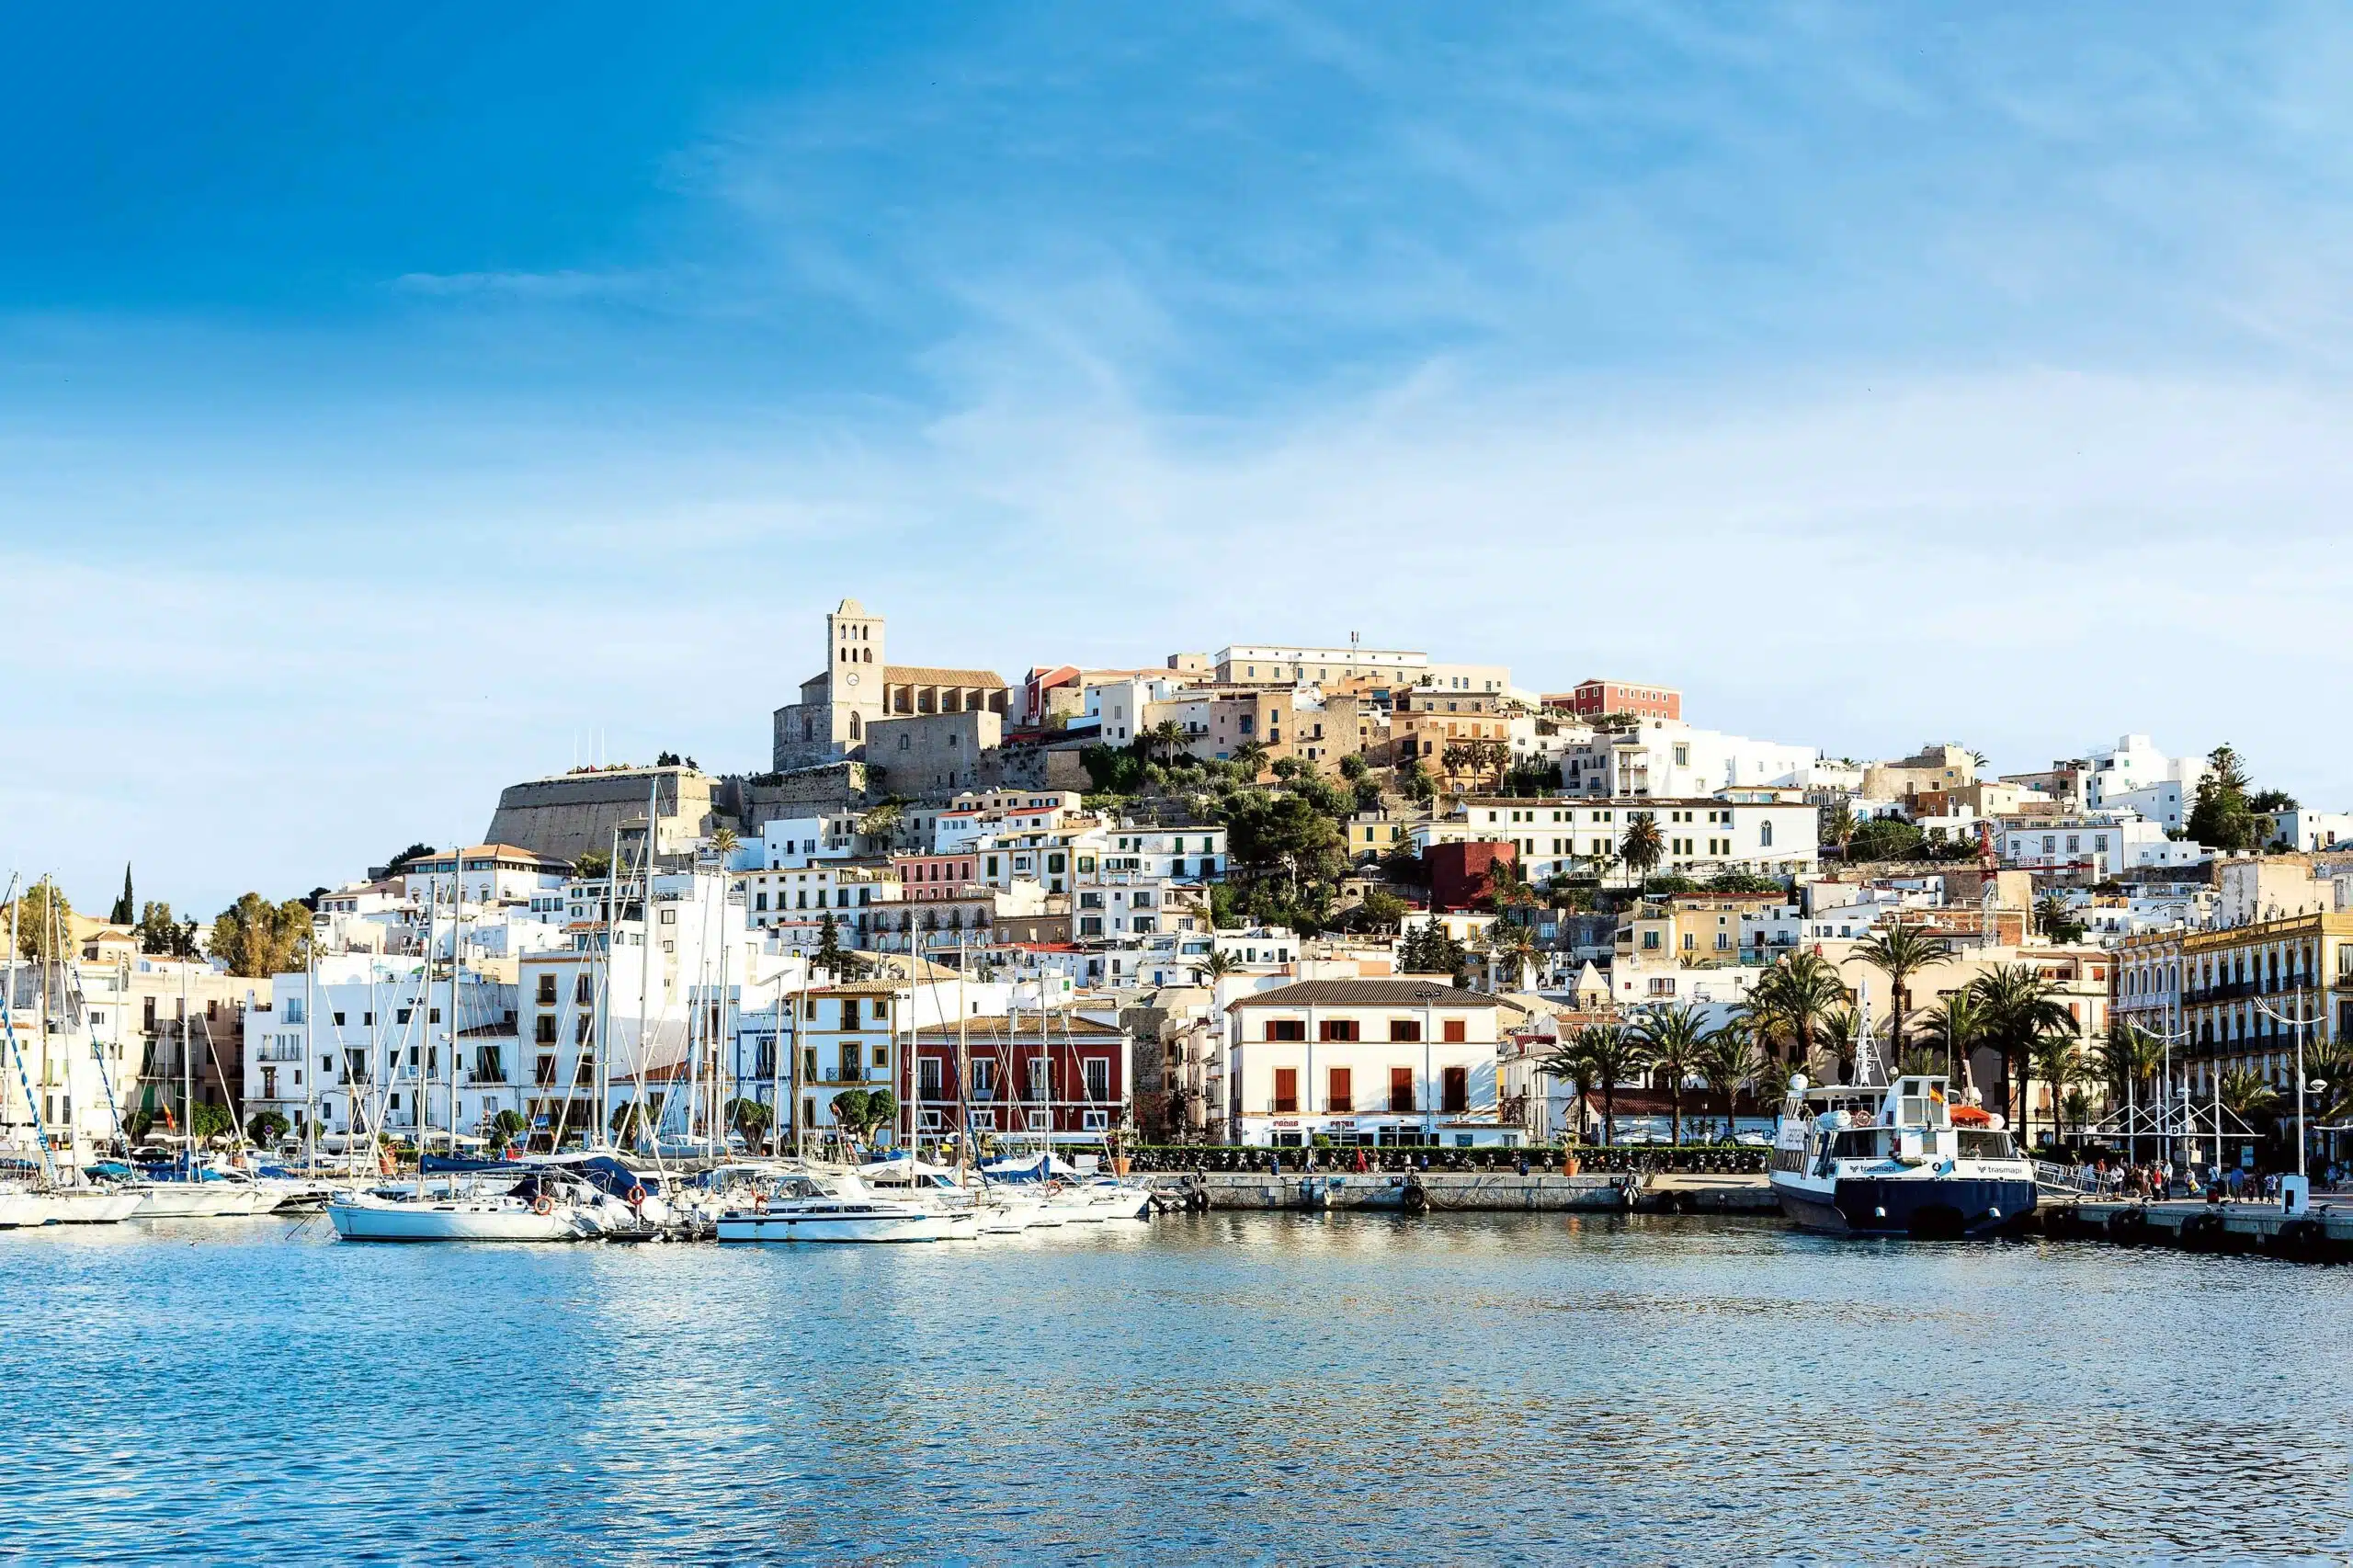 Usurpación de viviendas por okupas en Ibiza